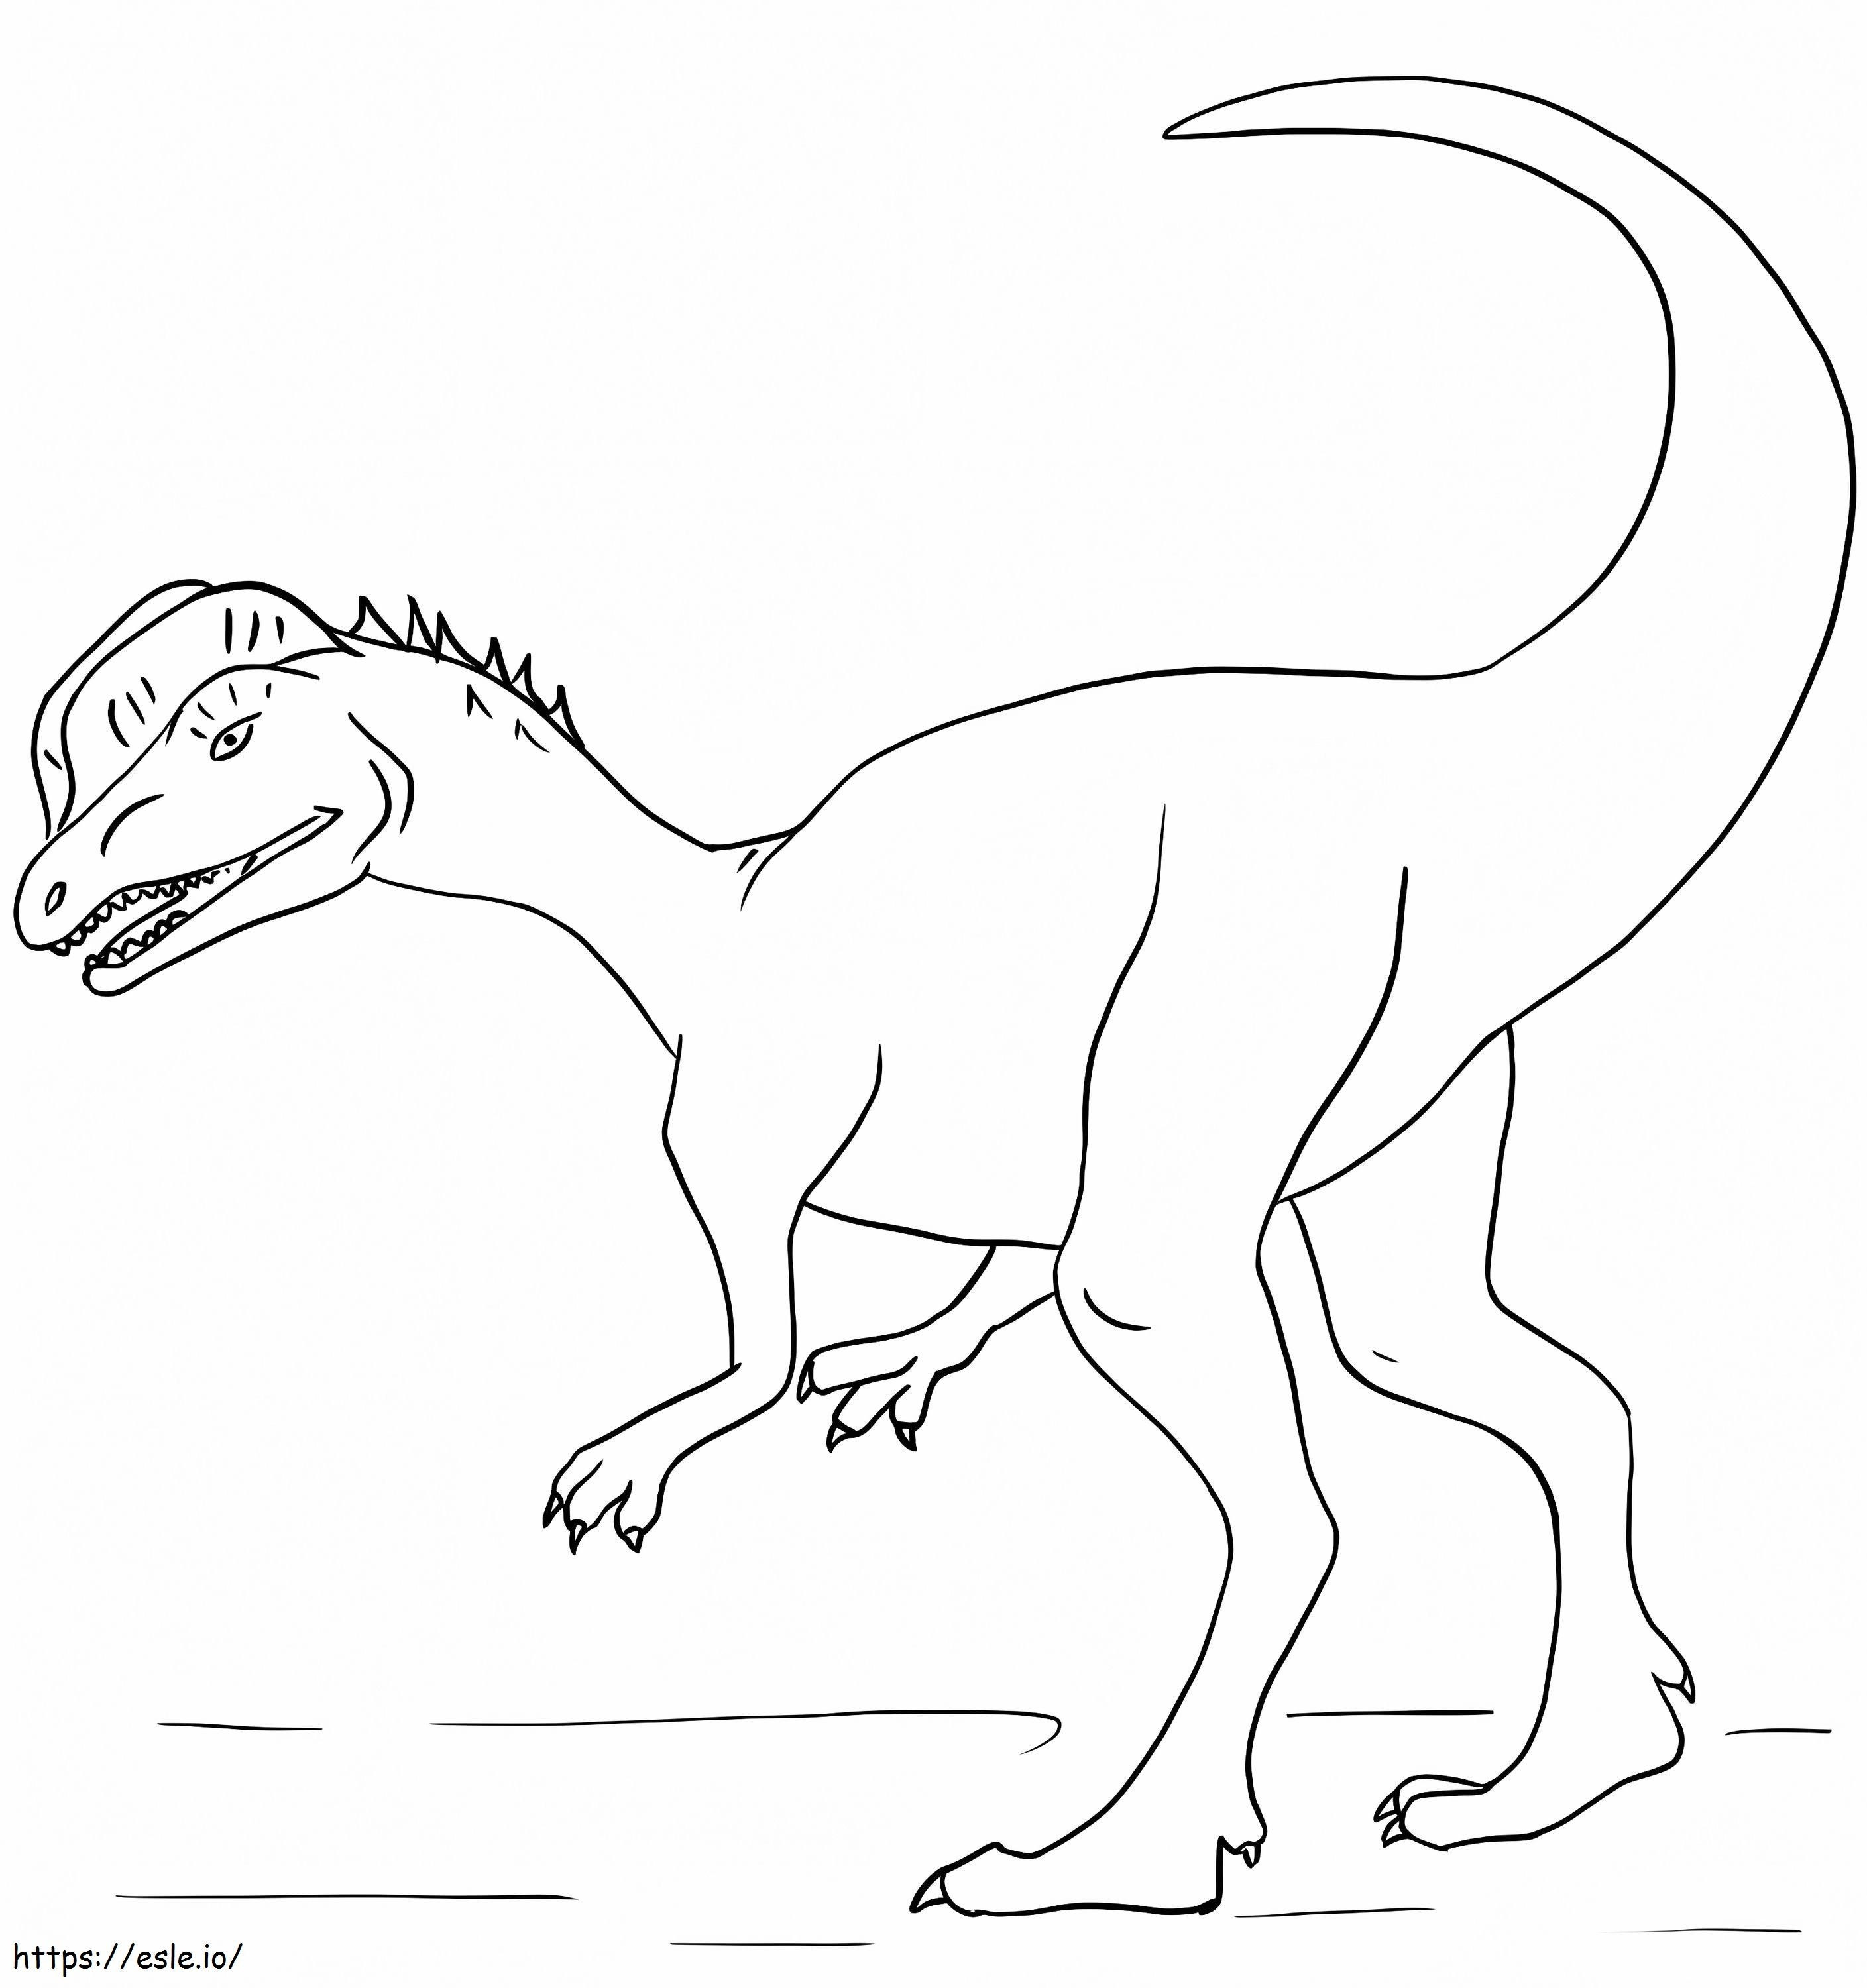 Dilophosaurus 1 ausmalbilder